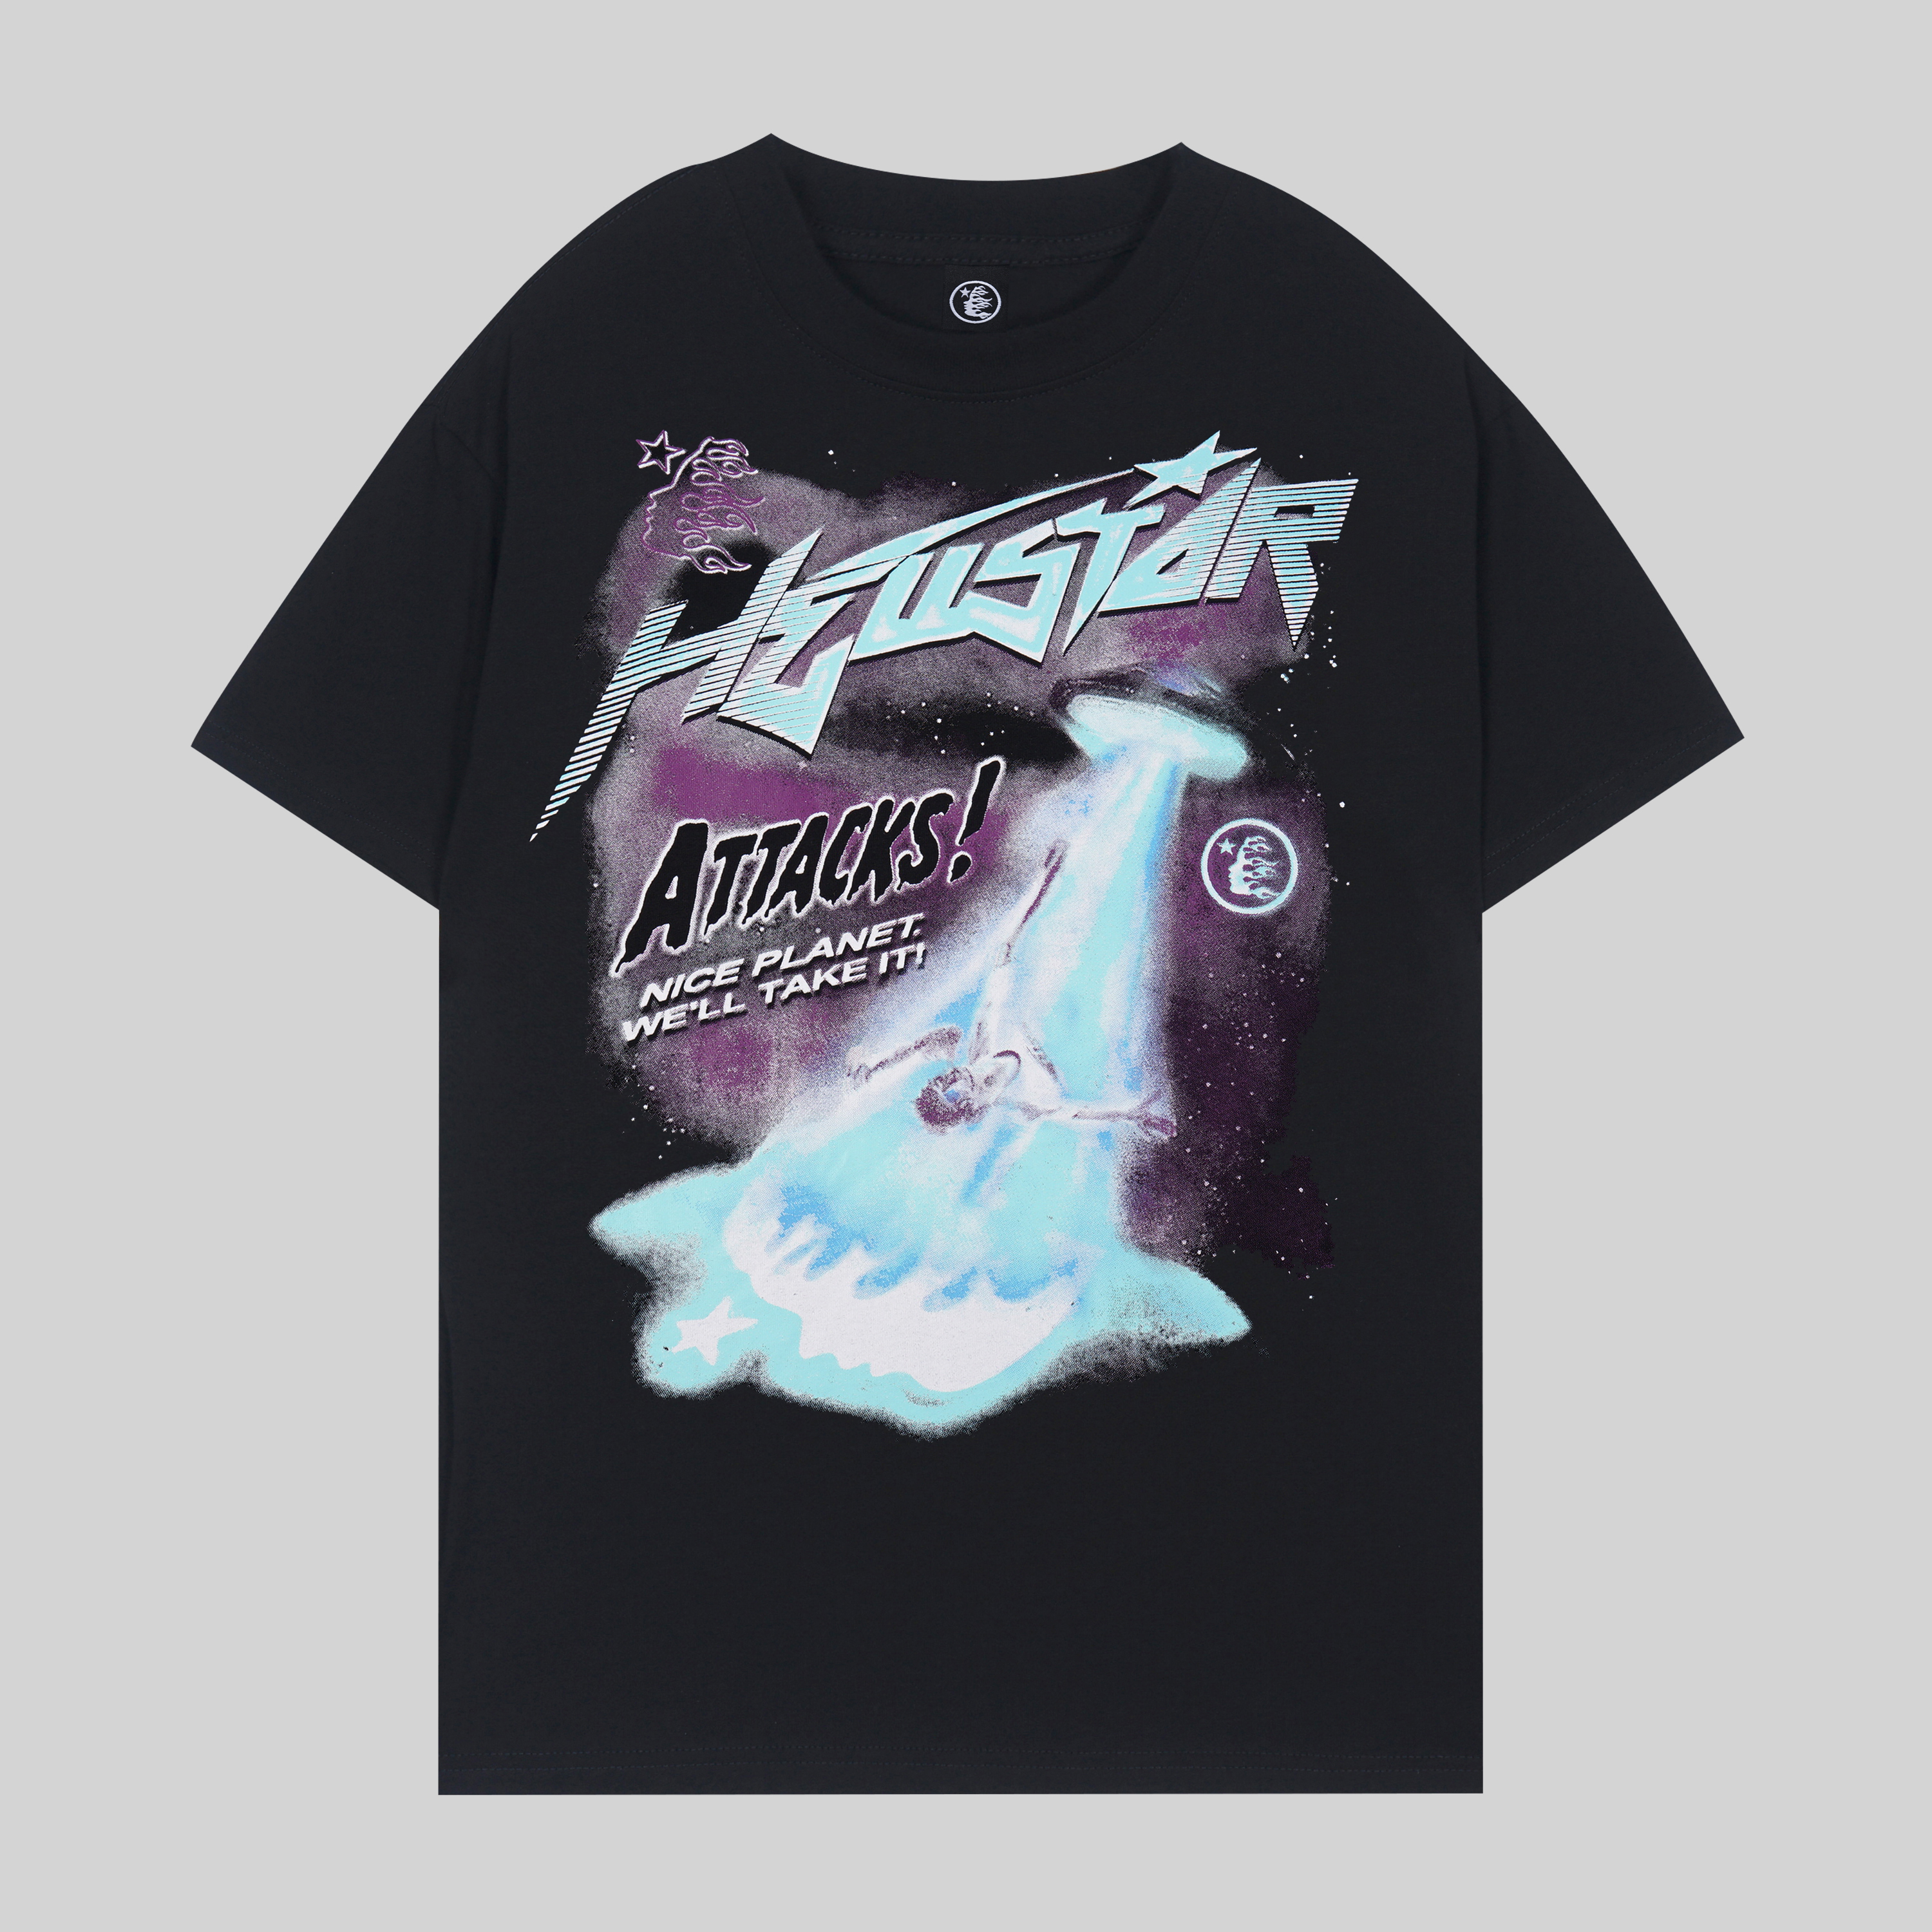 Neues Hellstar Alien Art Print T-Shirt T-Shirt T-Shirt Herren Damen T-Shirts Grafik T-Shirt Hipster gewaschener Stoff Street Graffiti Schriftzug Folie Herren Plus Size SMLXL2XL3XL